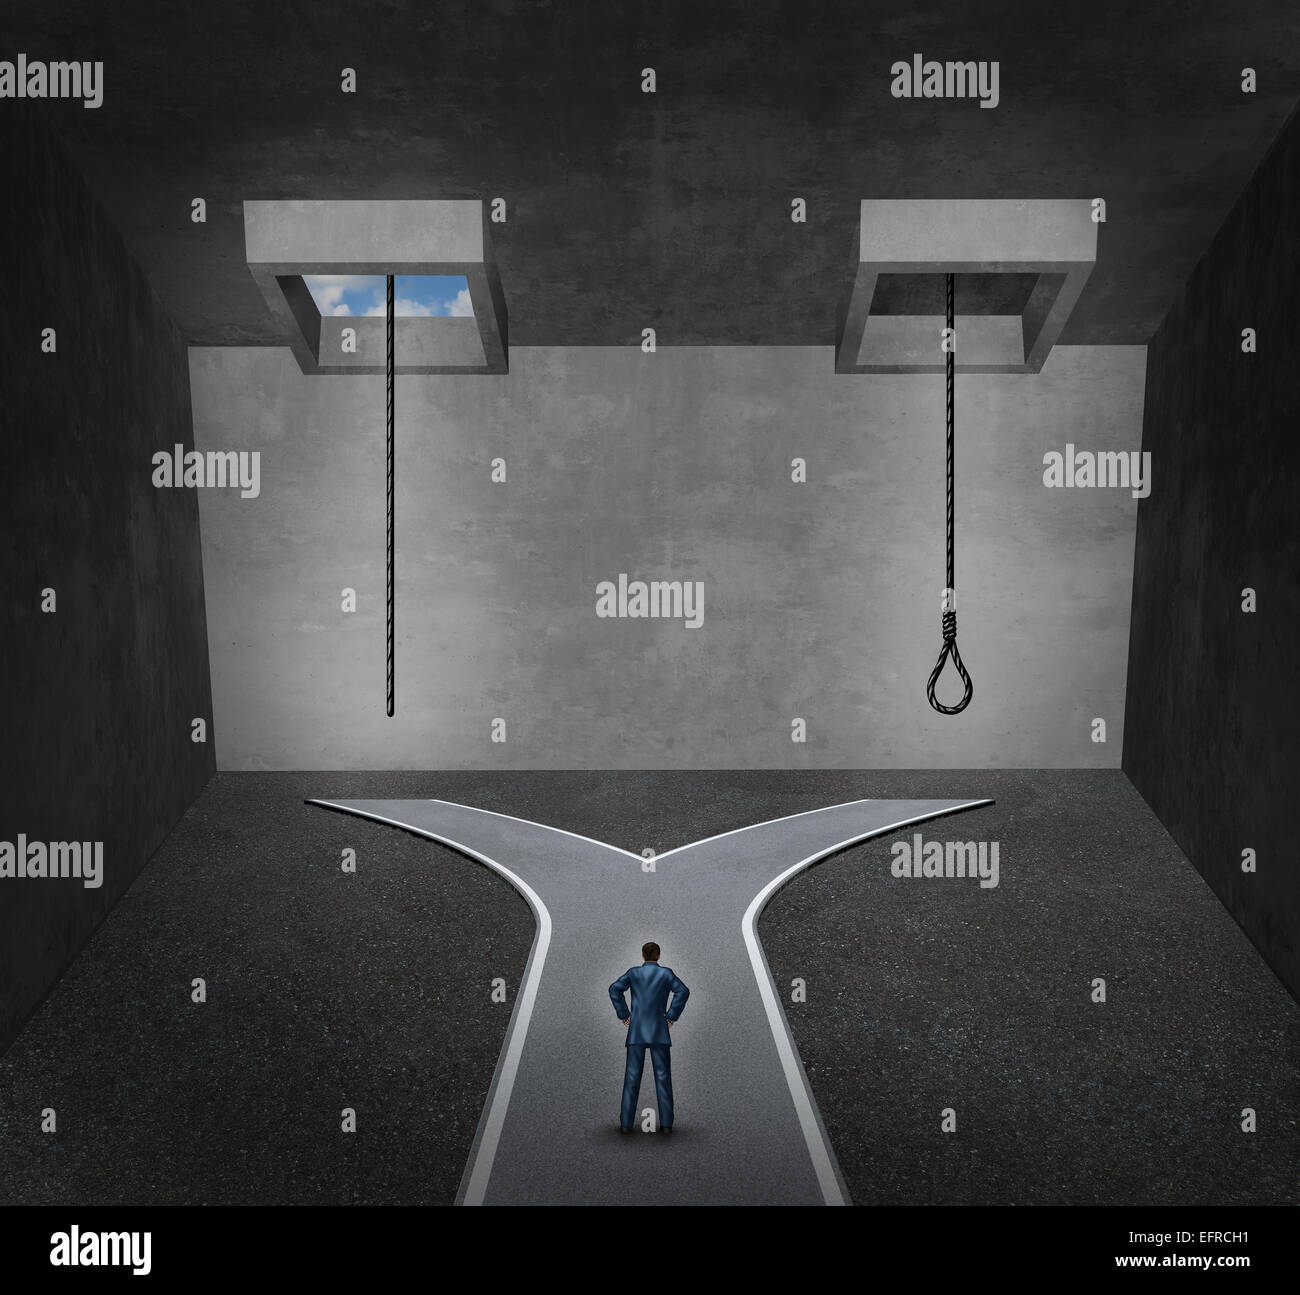 Selbstmord-Konzept als eine Person vor einem schwierigen psychologischen  Dilemma zwischen ein Seil mit einer Schlinge oder eine Lebensader als  Metapher Stockfotografie - Alamy